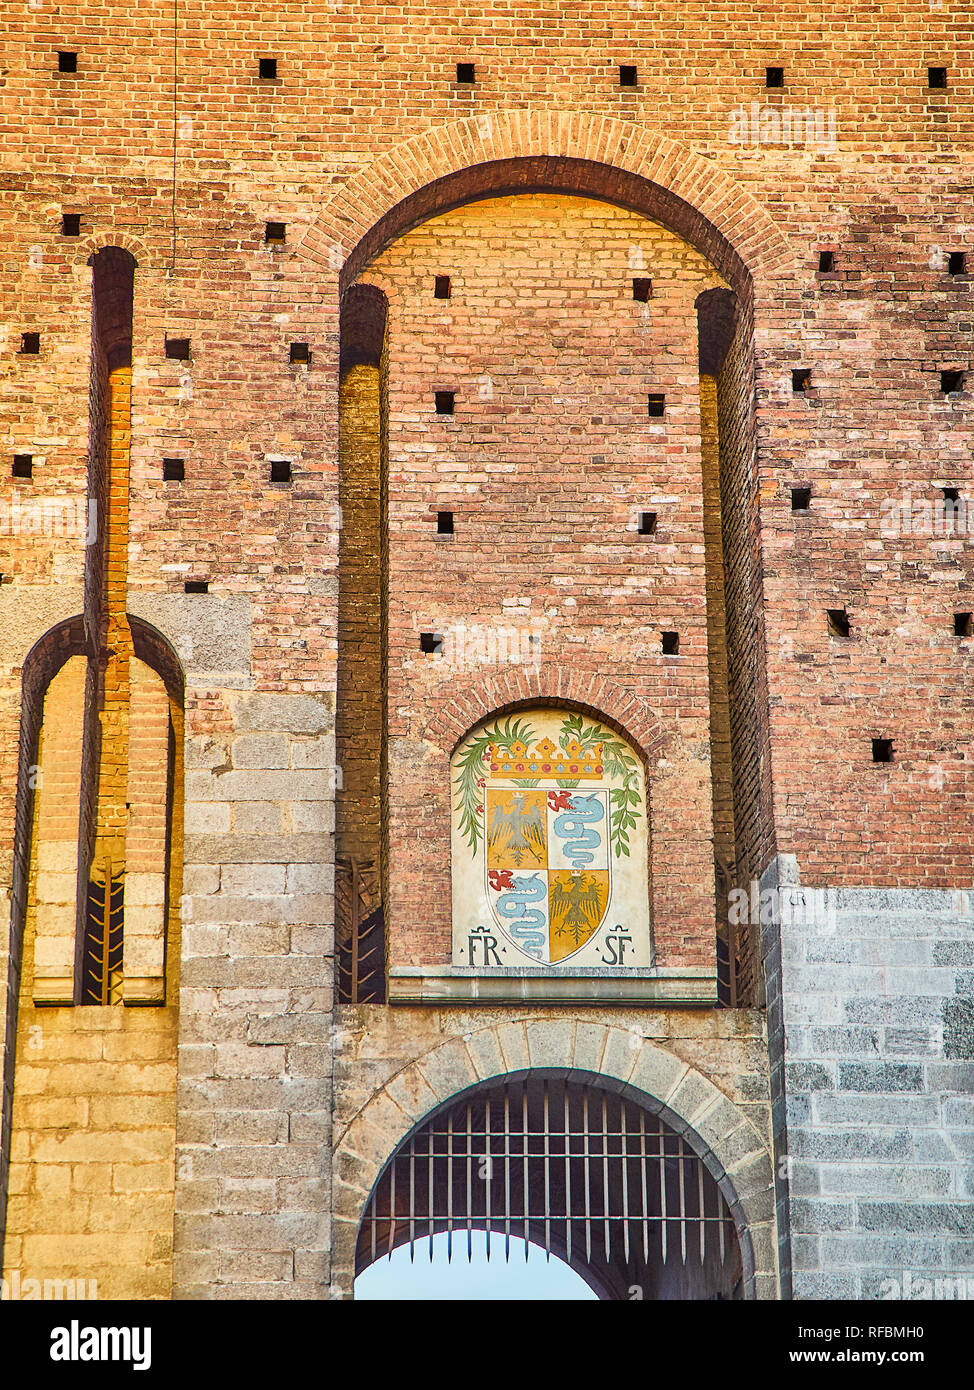 Stemma di Francesco Sforza oltre a uno degli ingressi del Castello Sforzesco, Castello Sforzesco. Milano, lombardia, italia. Foto Stock